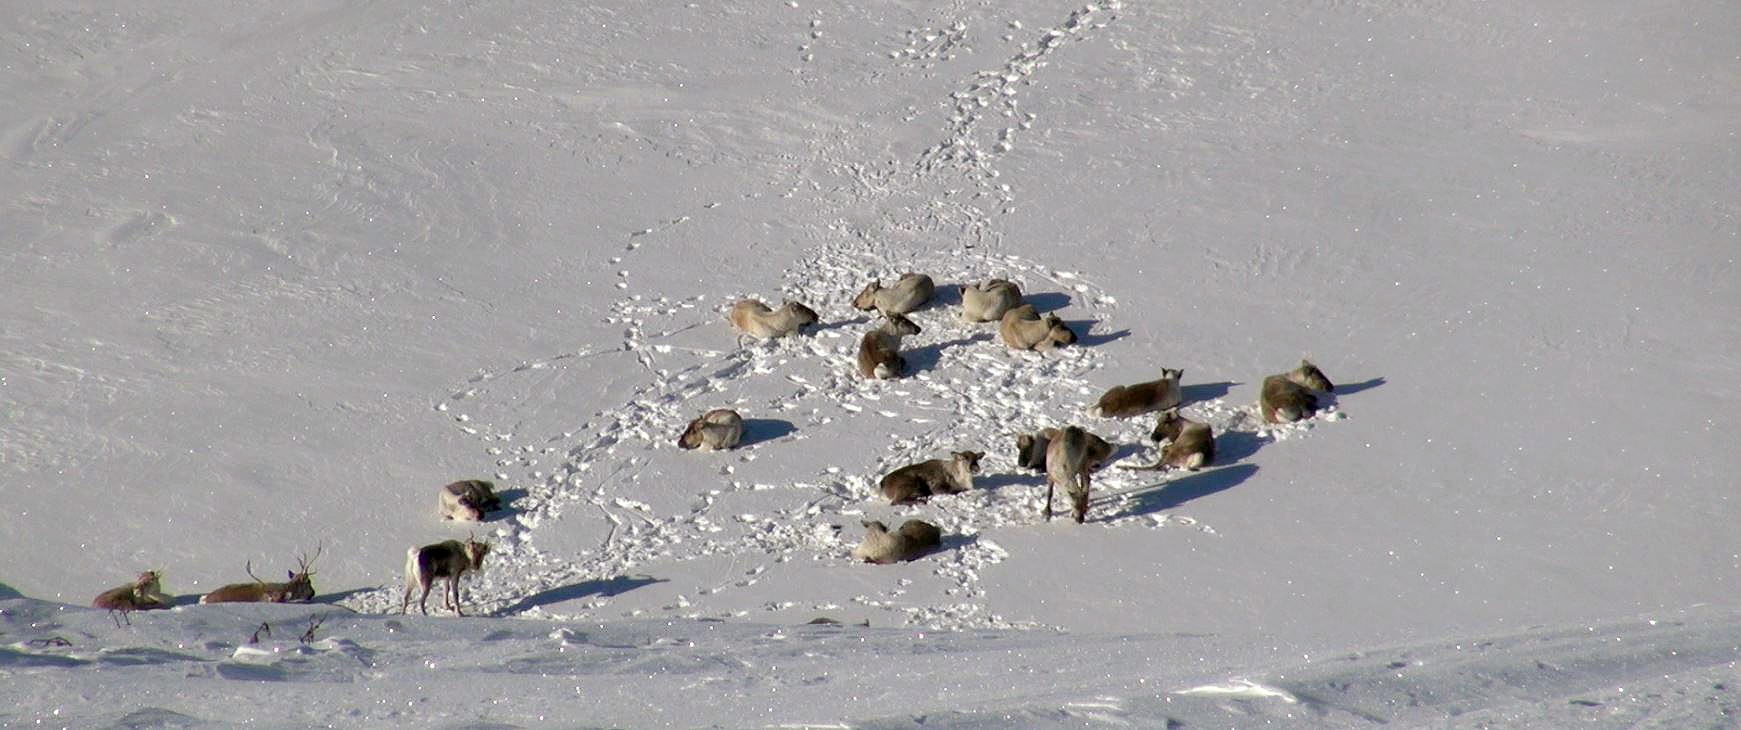 Villreinen hviler mye vinterstid, men pelsen isolerer godt. Foto: Anders Mossing